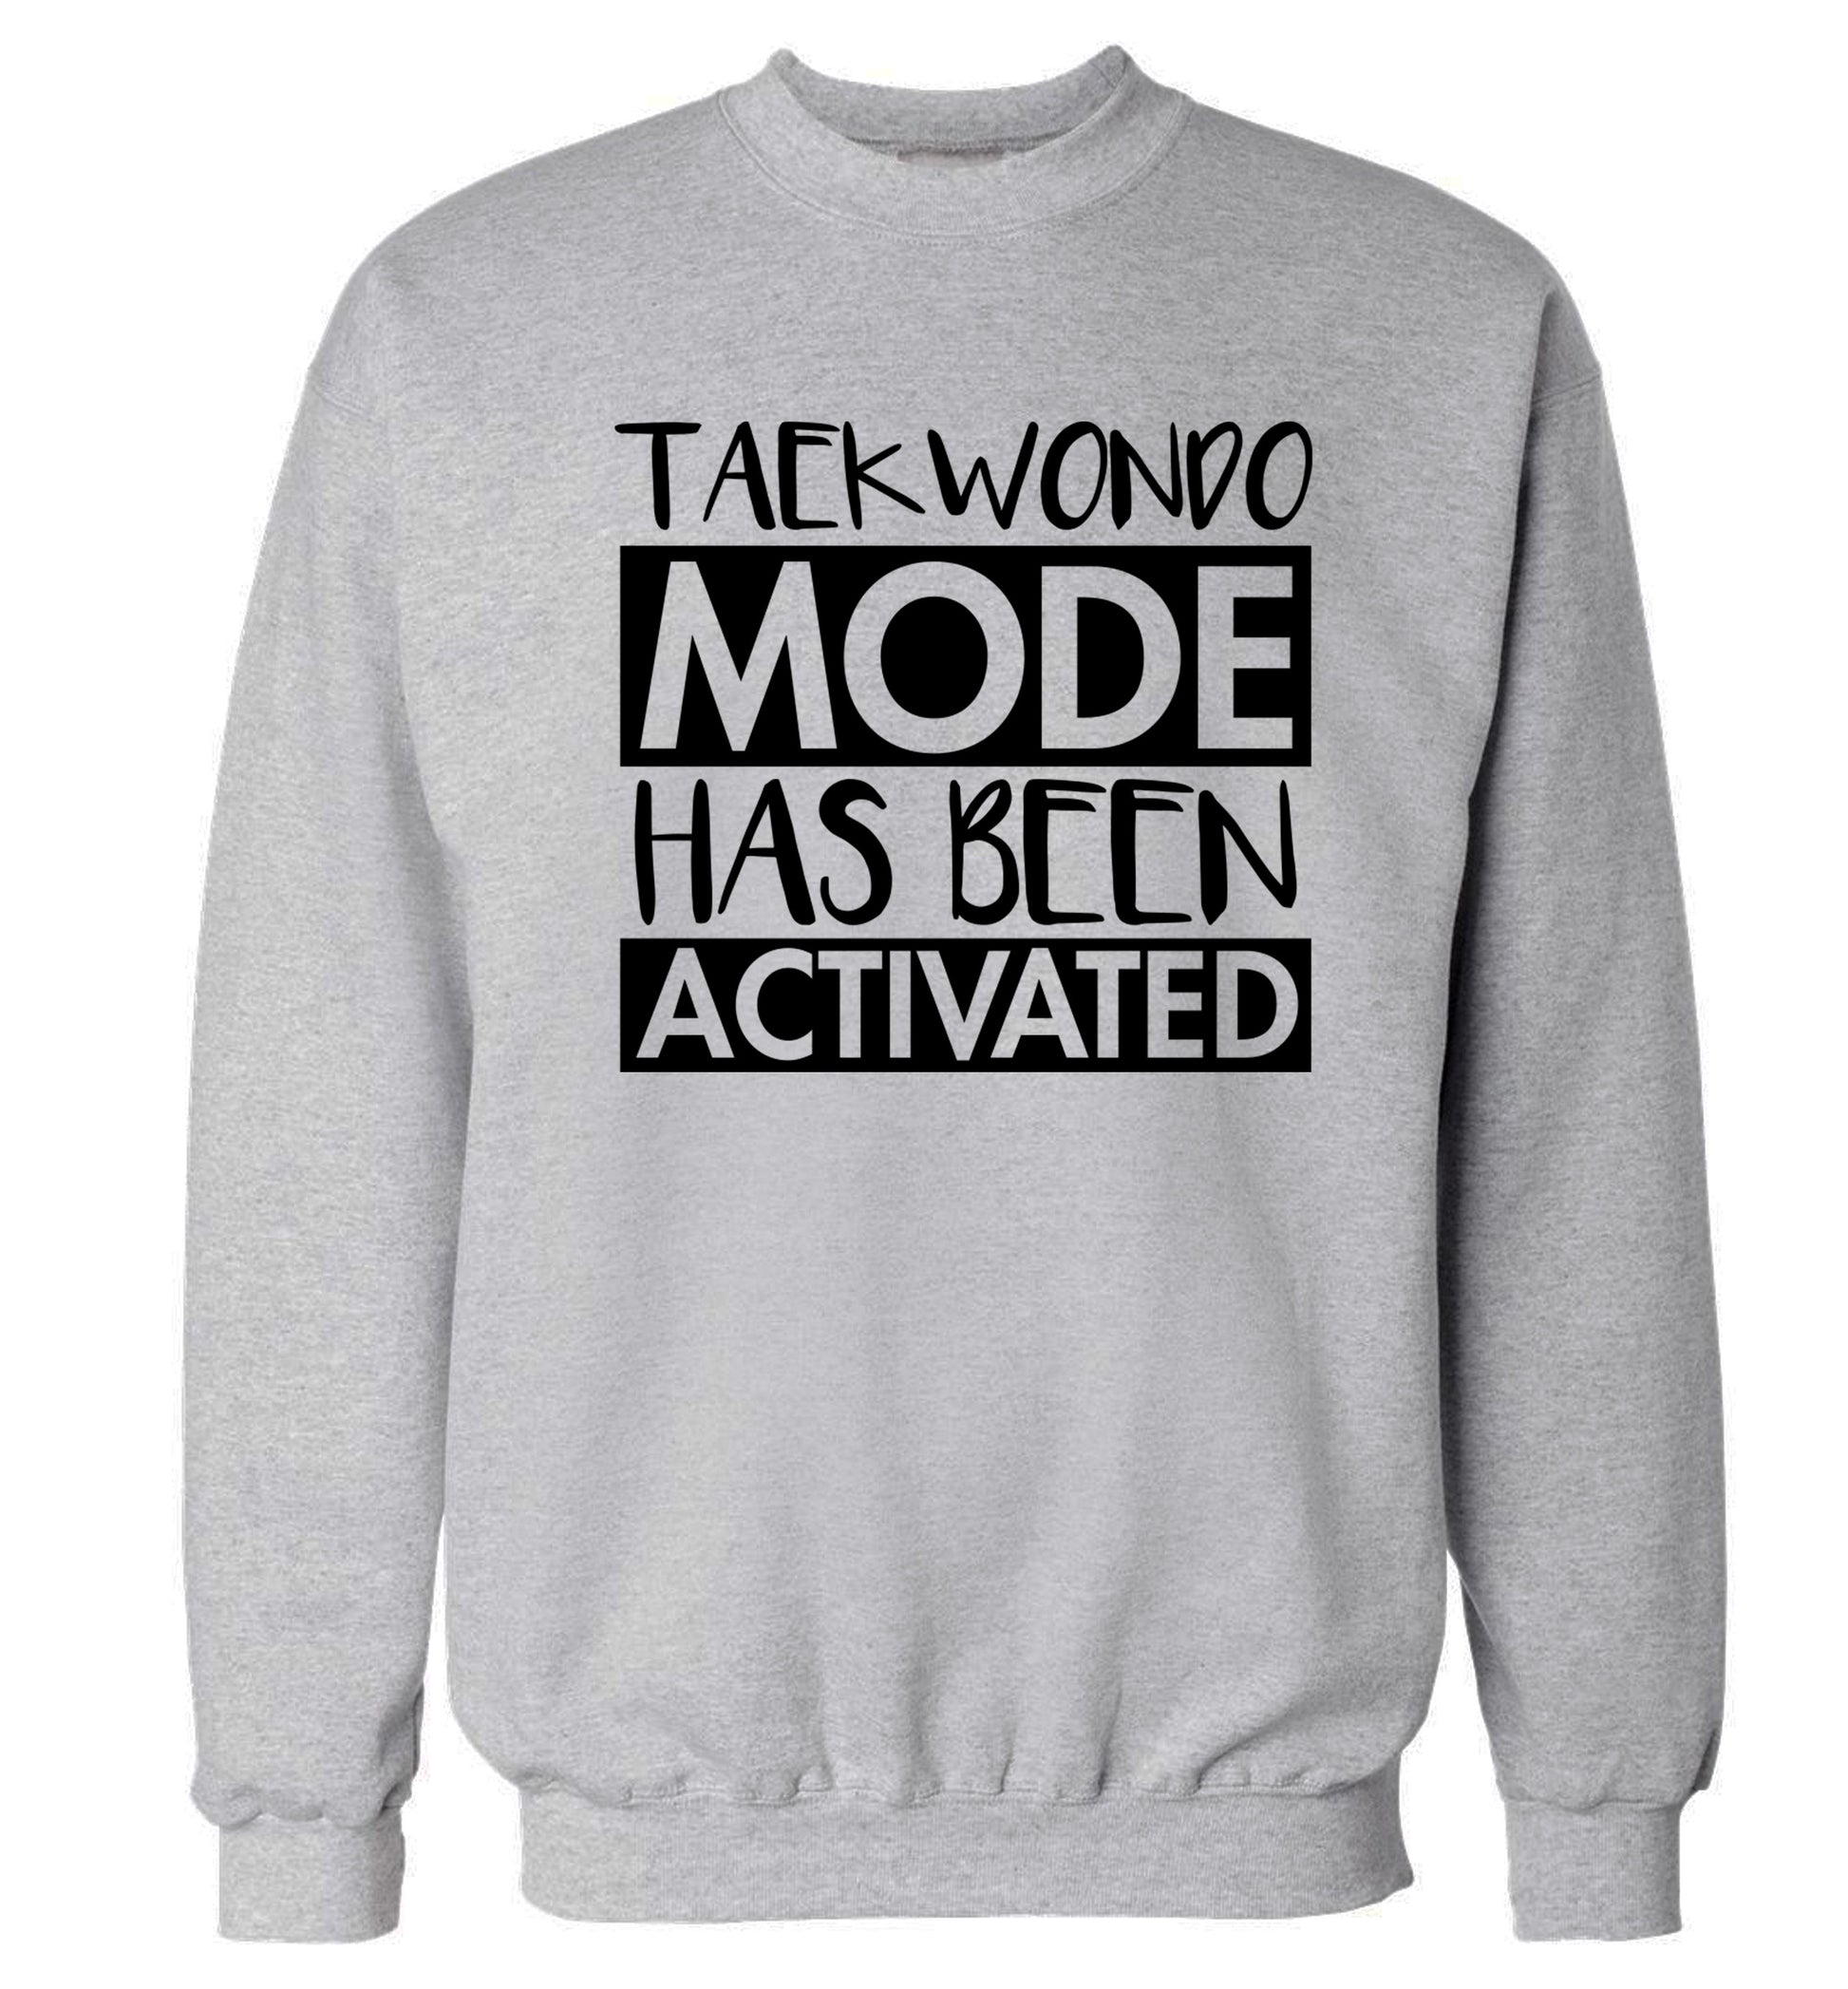 Taekwondo mode activated Adult's unisex grey Sweater 2XL